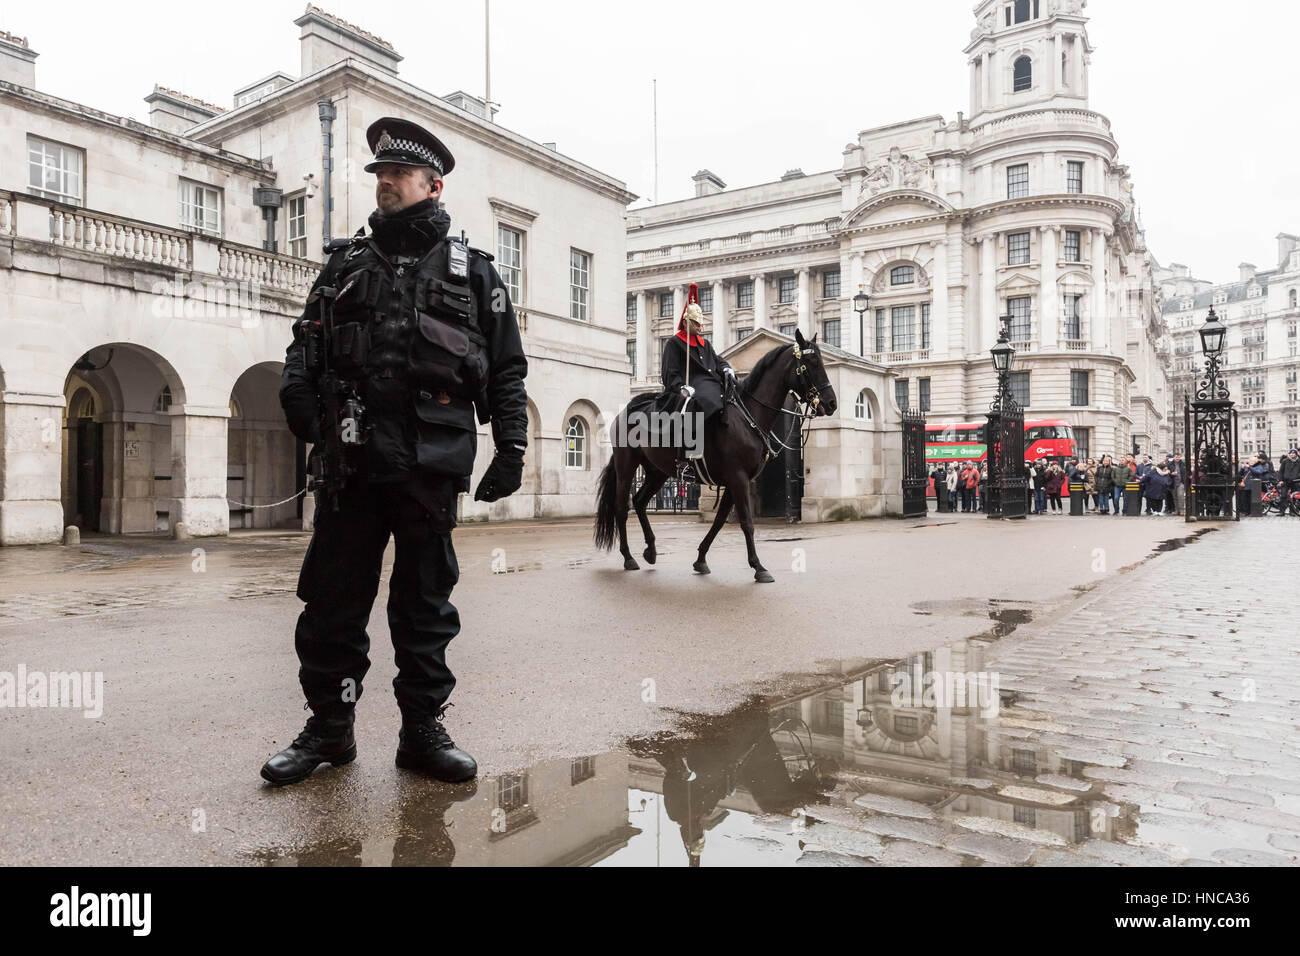 Londres, Royaume-Uni. Feb 11, 2017. La police armée a accru la sécurité pendant l'évolution de la cavalerie de la garde à Whitehall Crédit : Guy Josse/Alamy Live News Banque D'Images